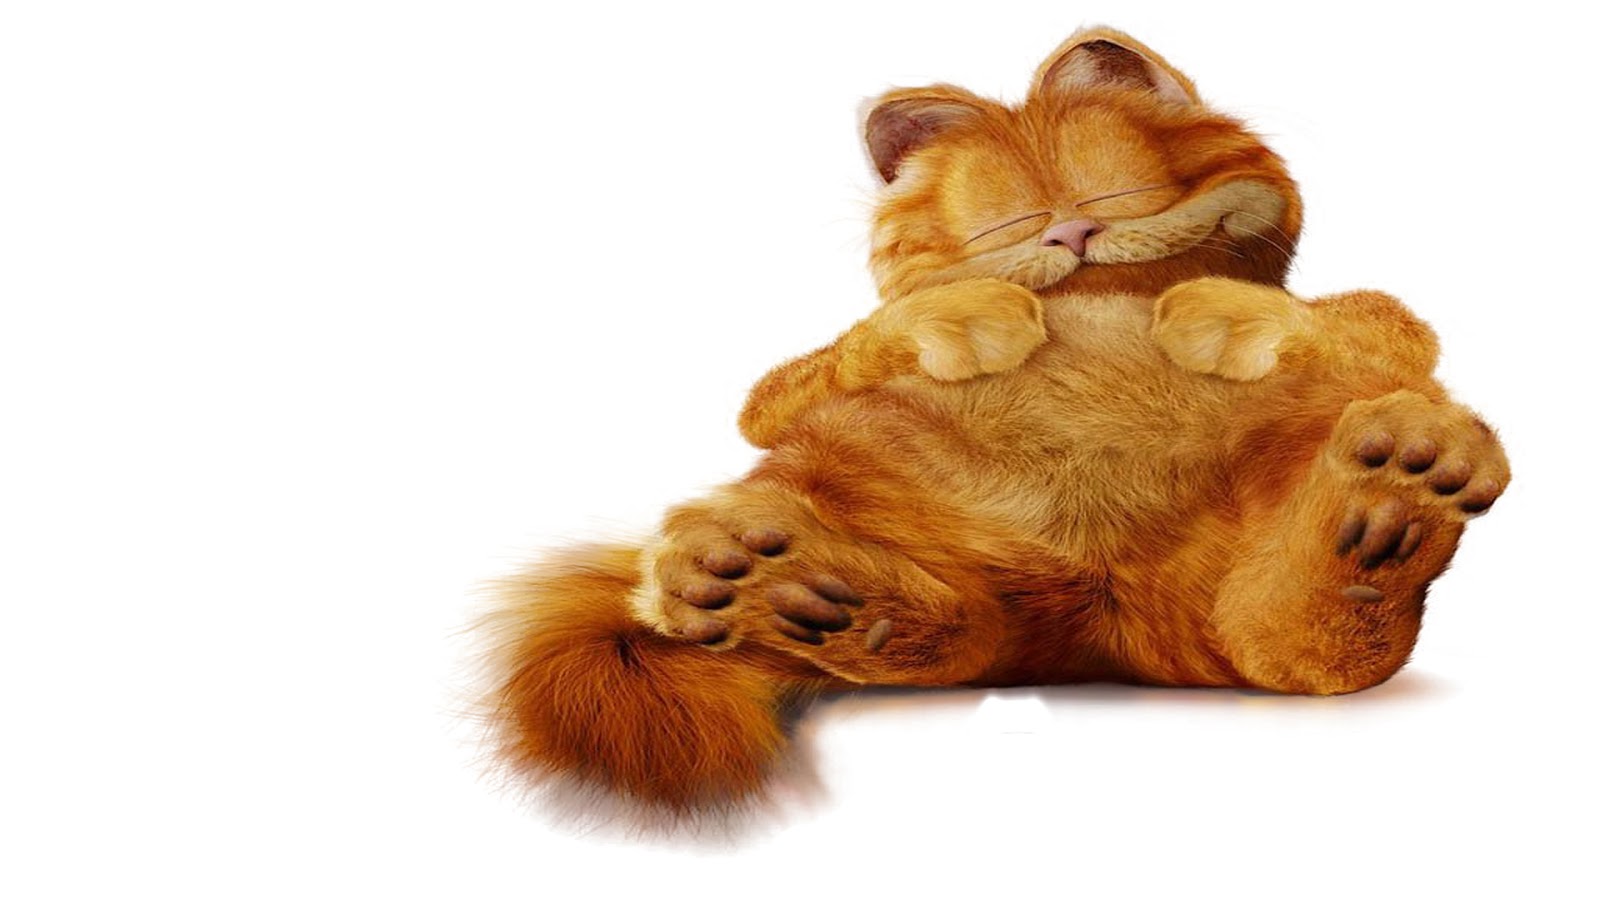 Wallpaper Lucu  Gambar  Kucing Garfield  Terbaru 2020 Kata 